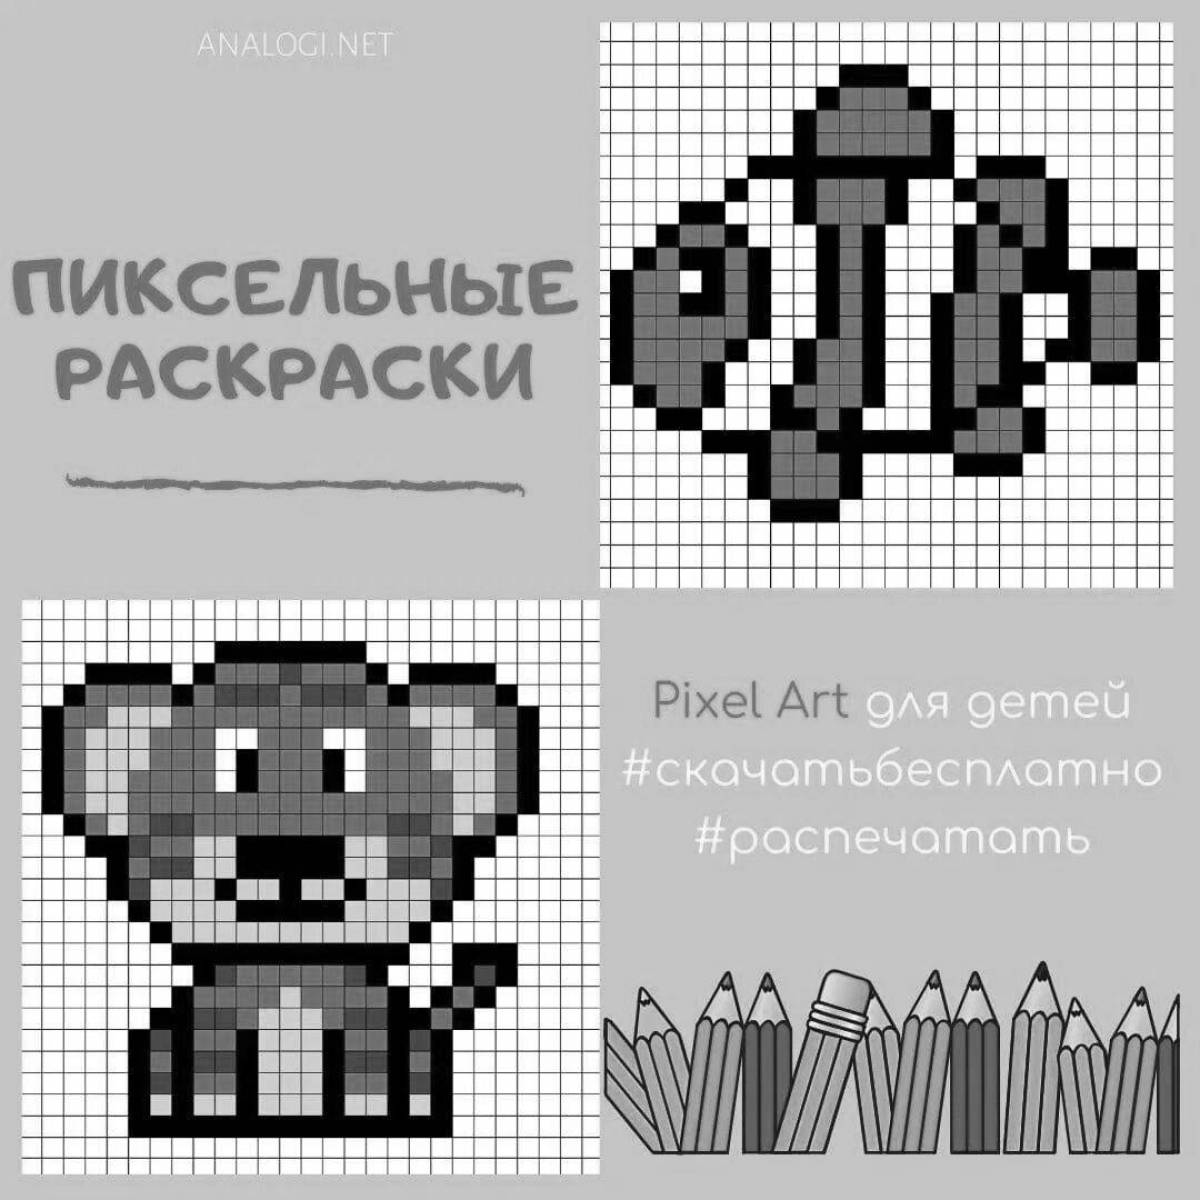 Привлекательная страница игры-раскраски pixel art